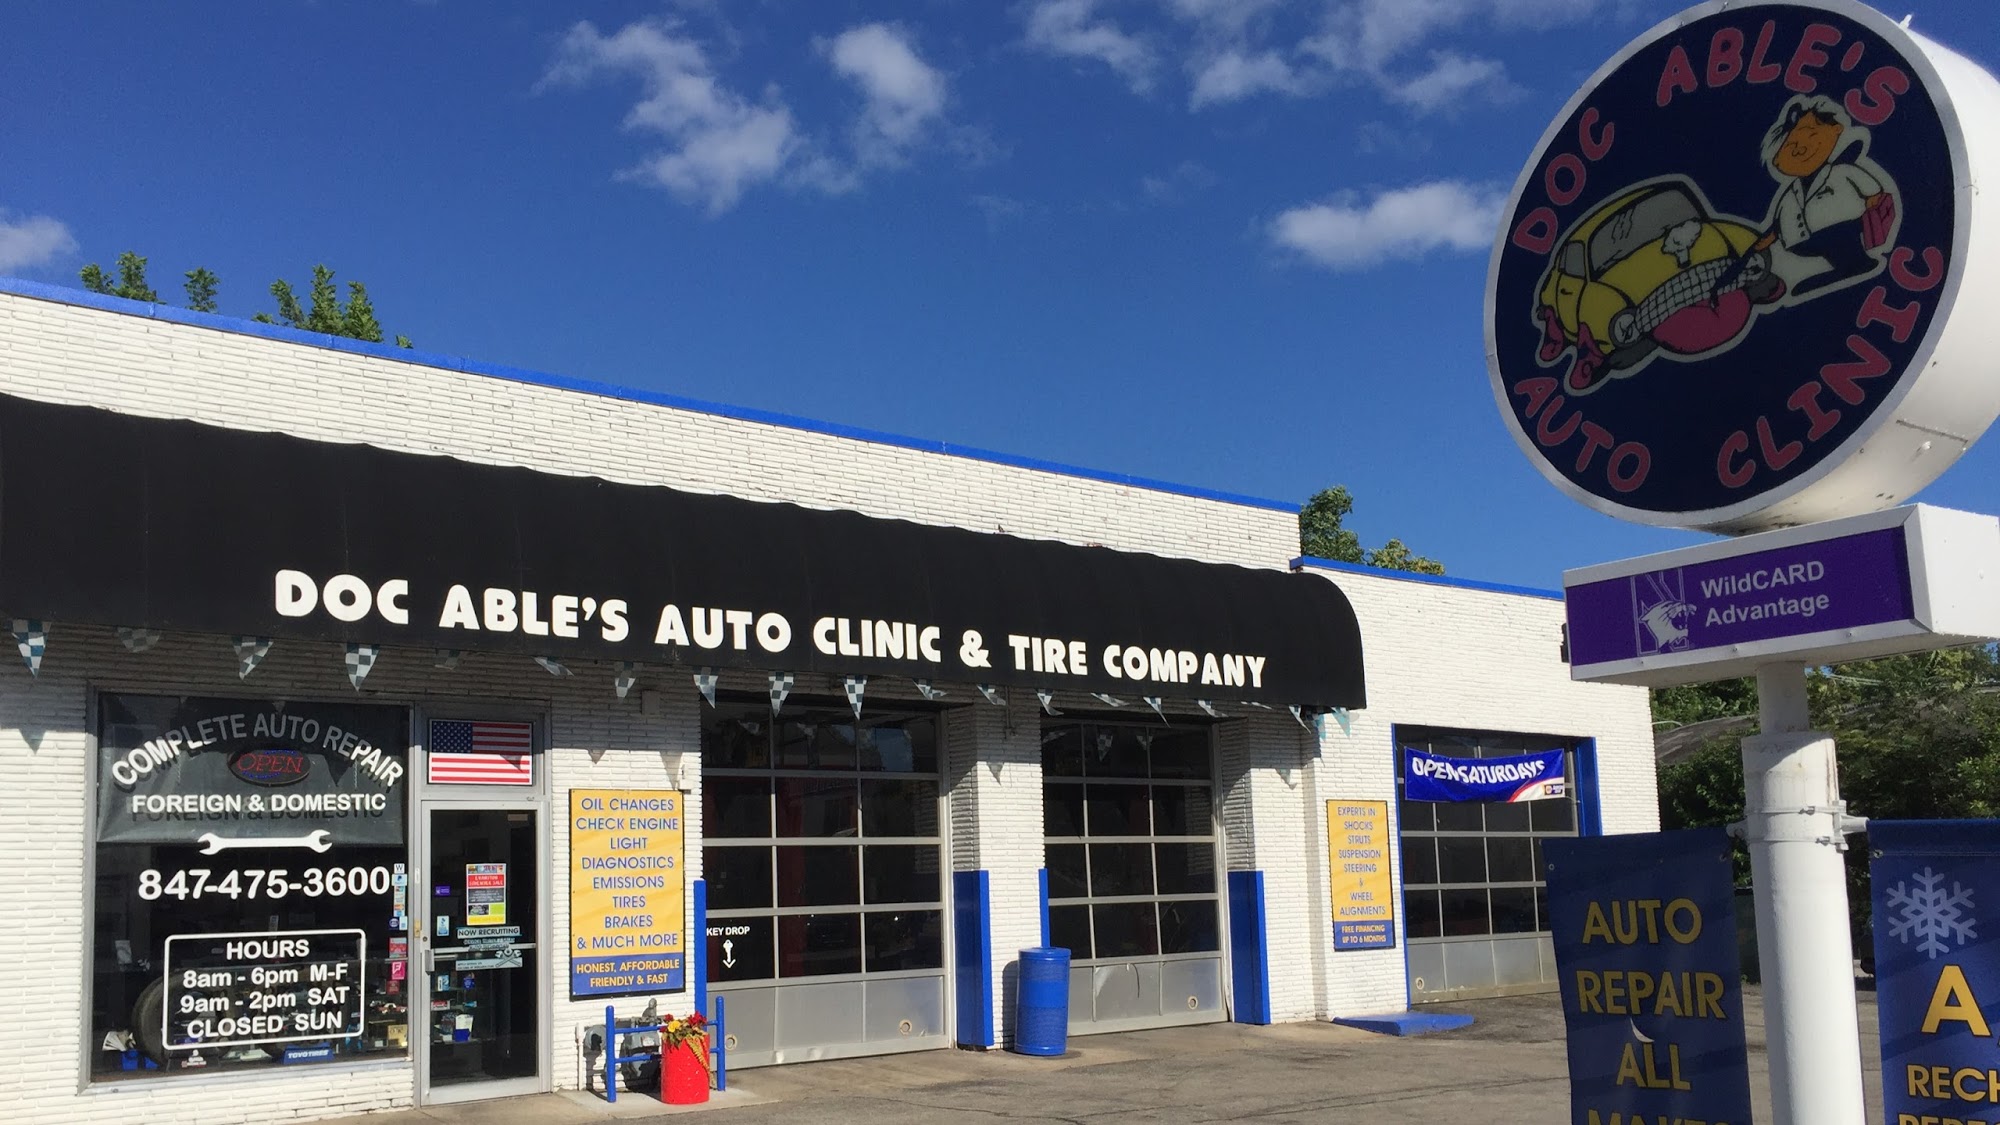 Doc Able's Auto Clinic, Inc.